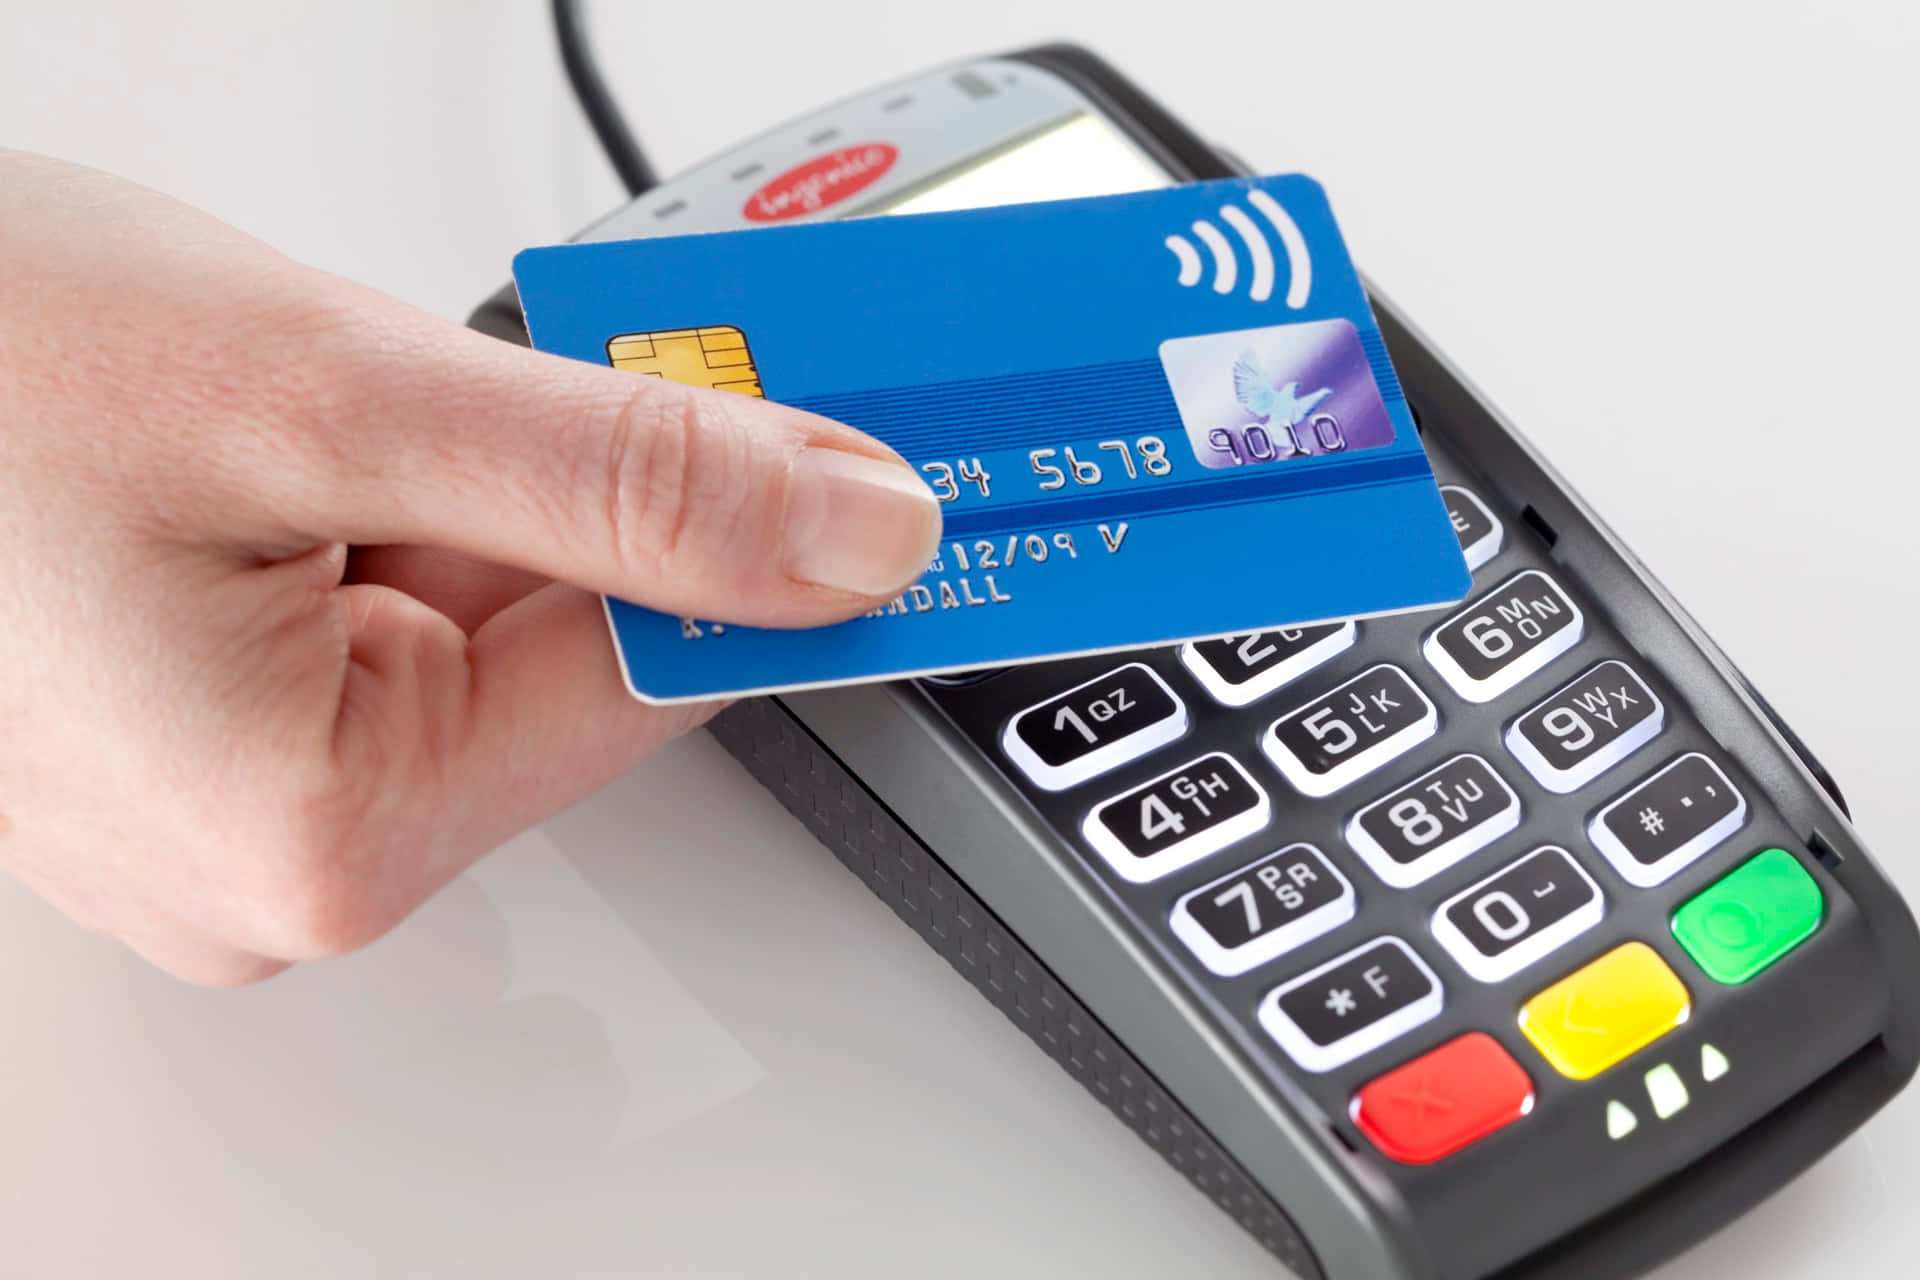 Enperson Håller I Ett Kreditkort Framför En Betalterminal.